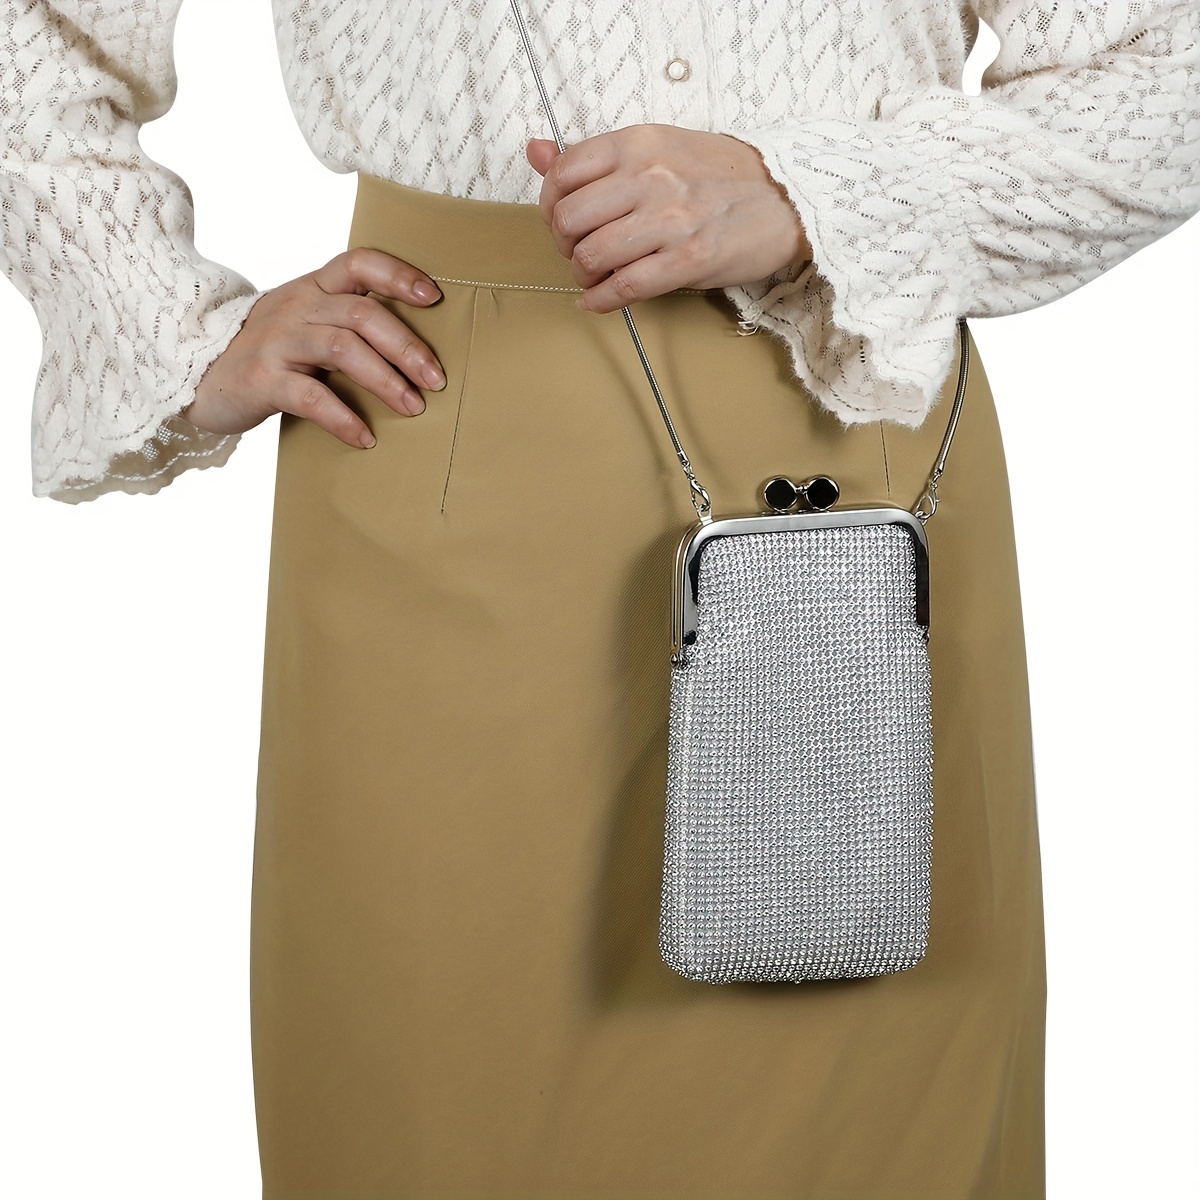 Bolsos cruzados para teléfono celular, elegante bolsa para teléfono  celular, cartera para teléfono celular, bolsos cruzados para mujer